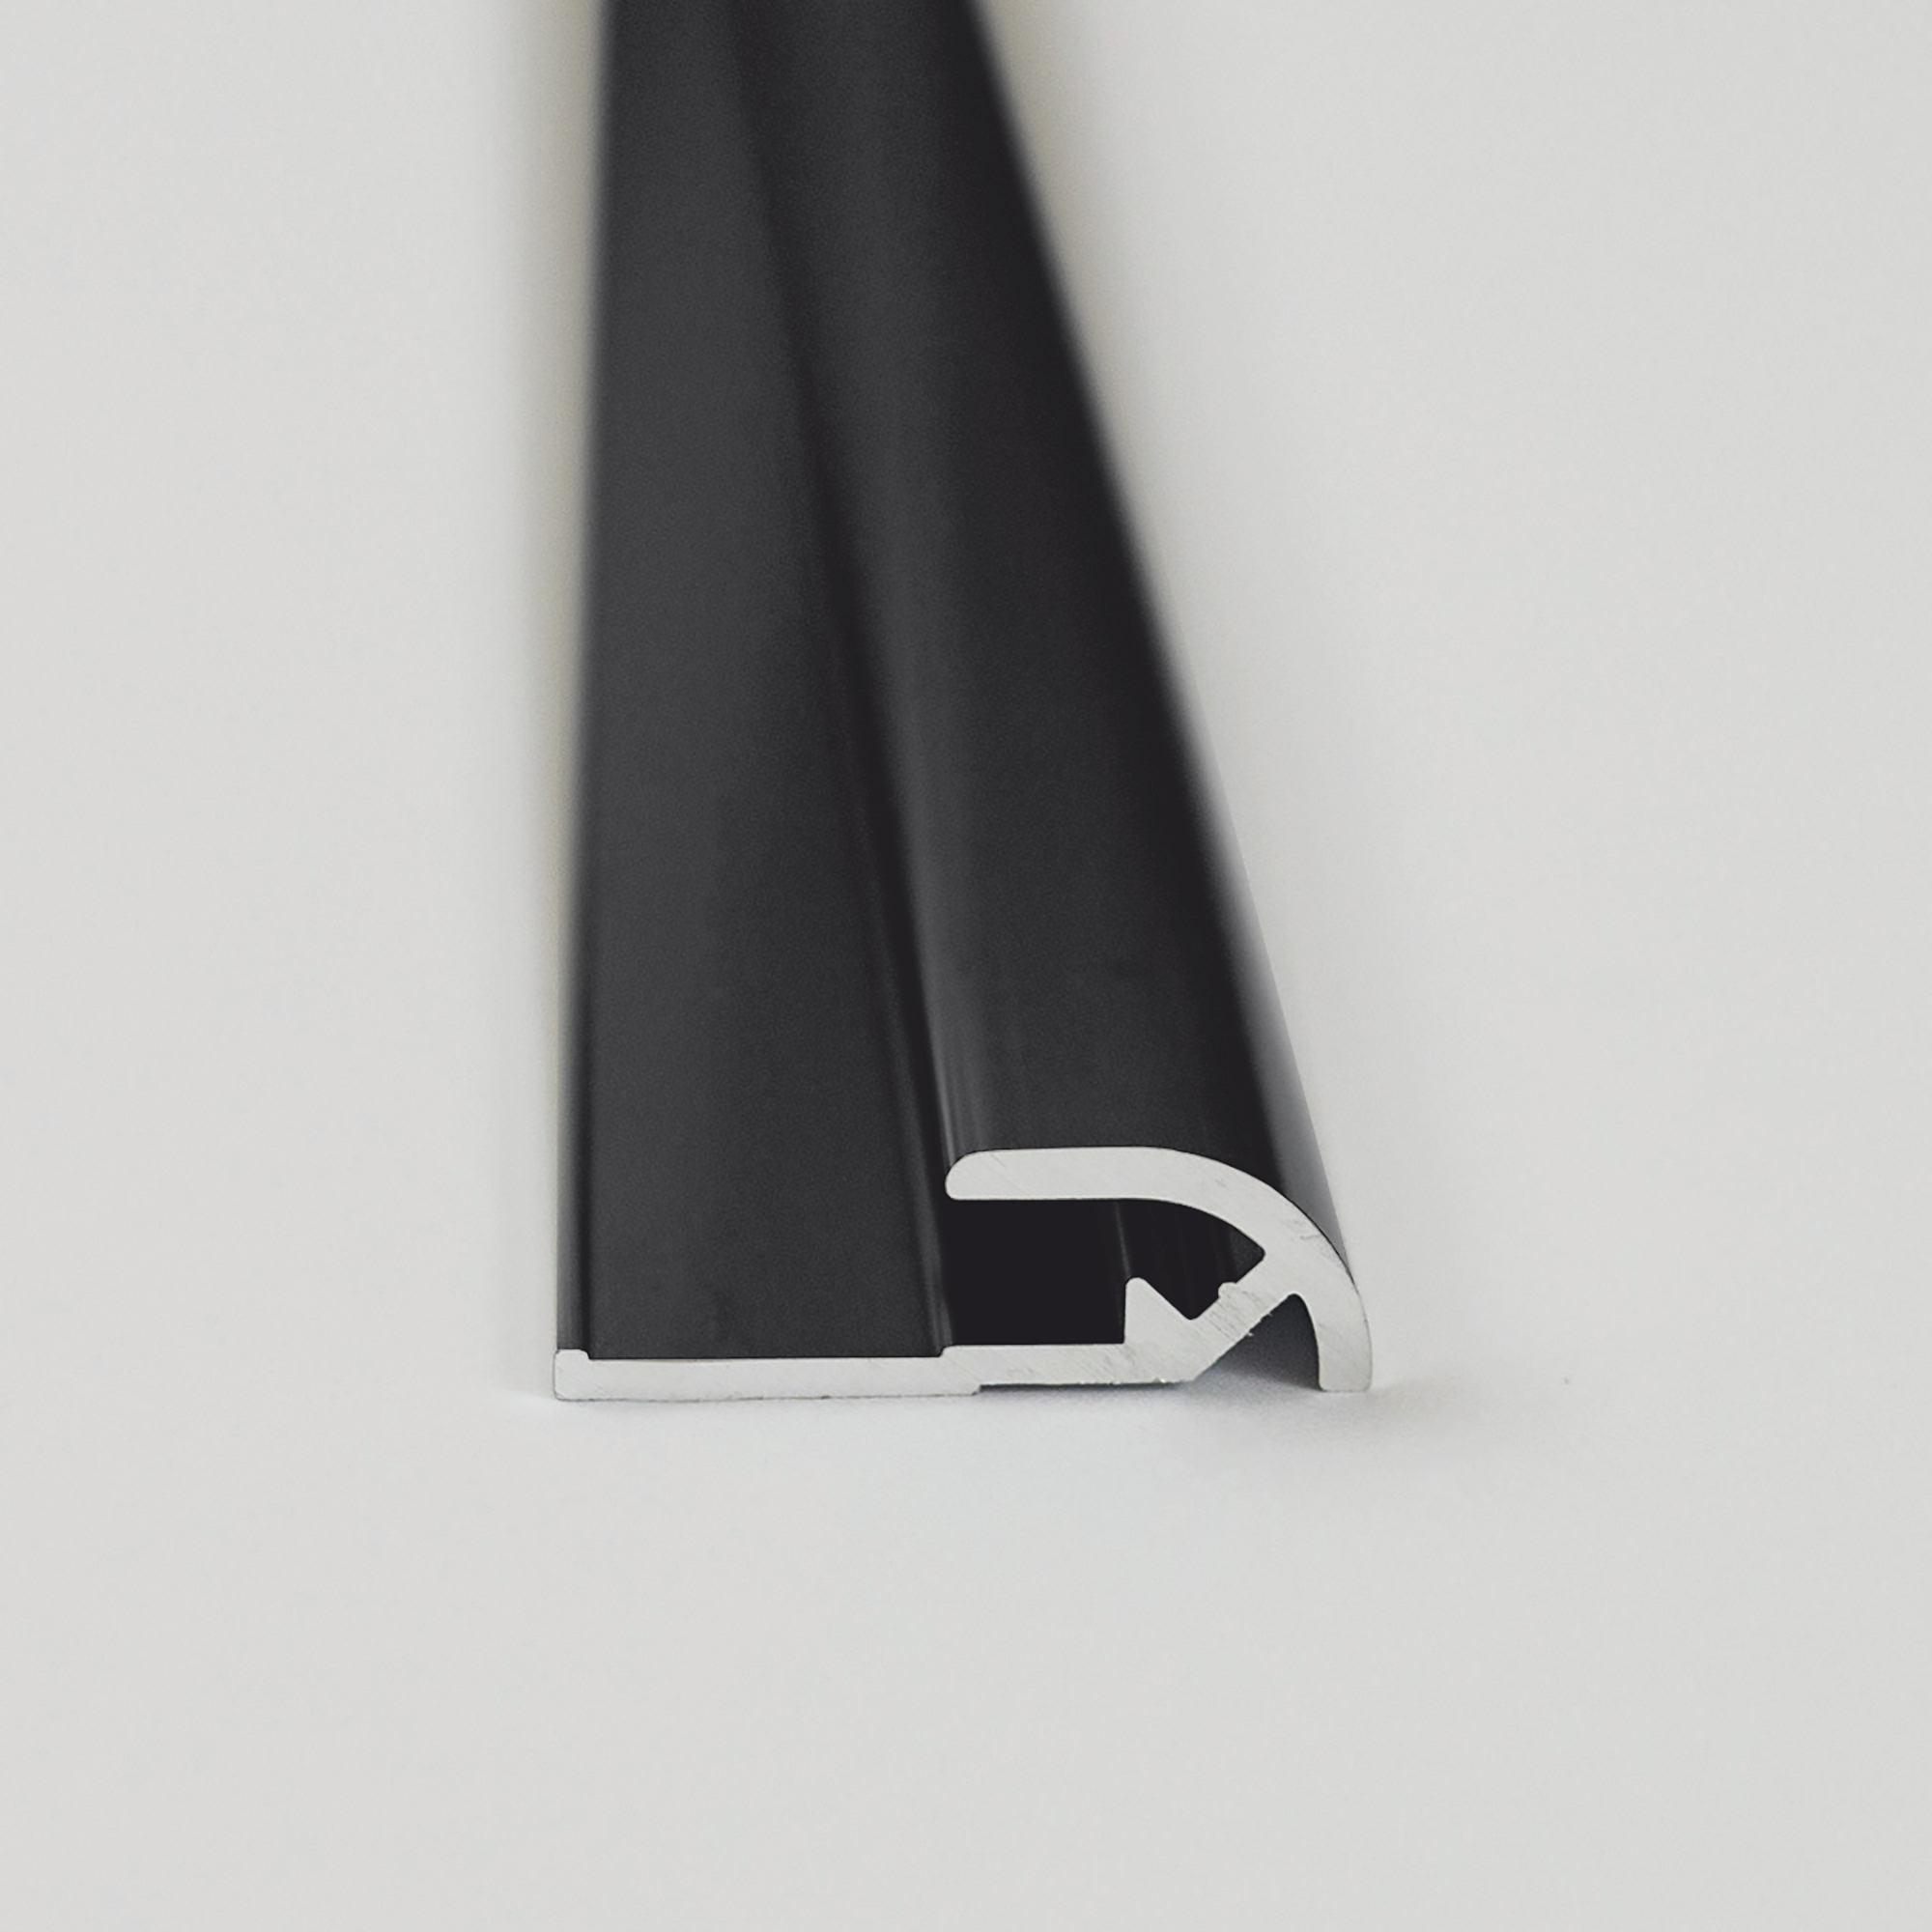 Abschlussprofil für Rückwandplatten, rund, schwarz matt, 2550 mm + product picture